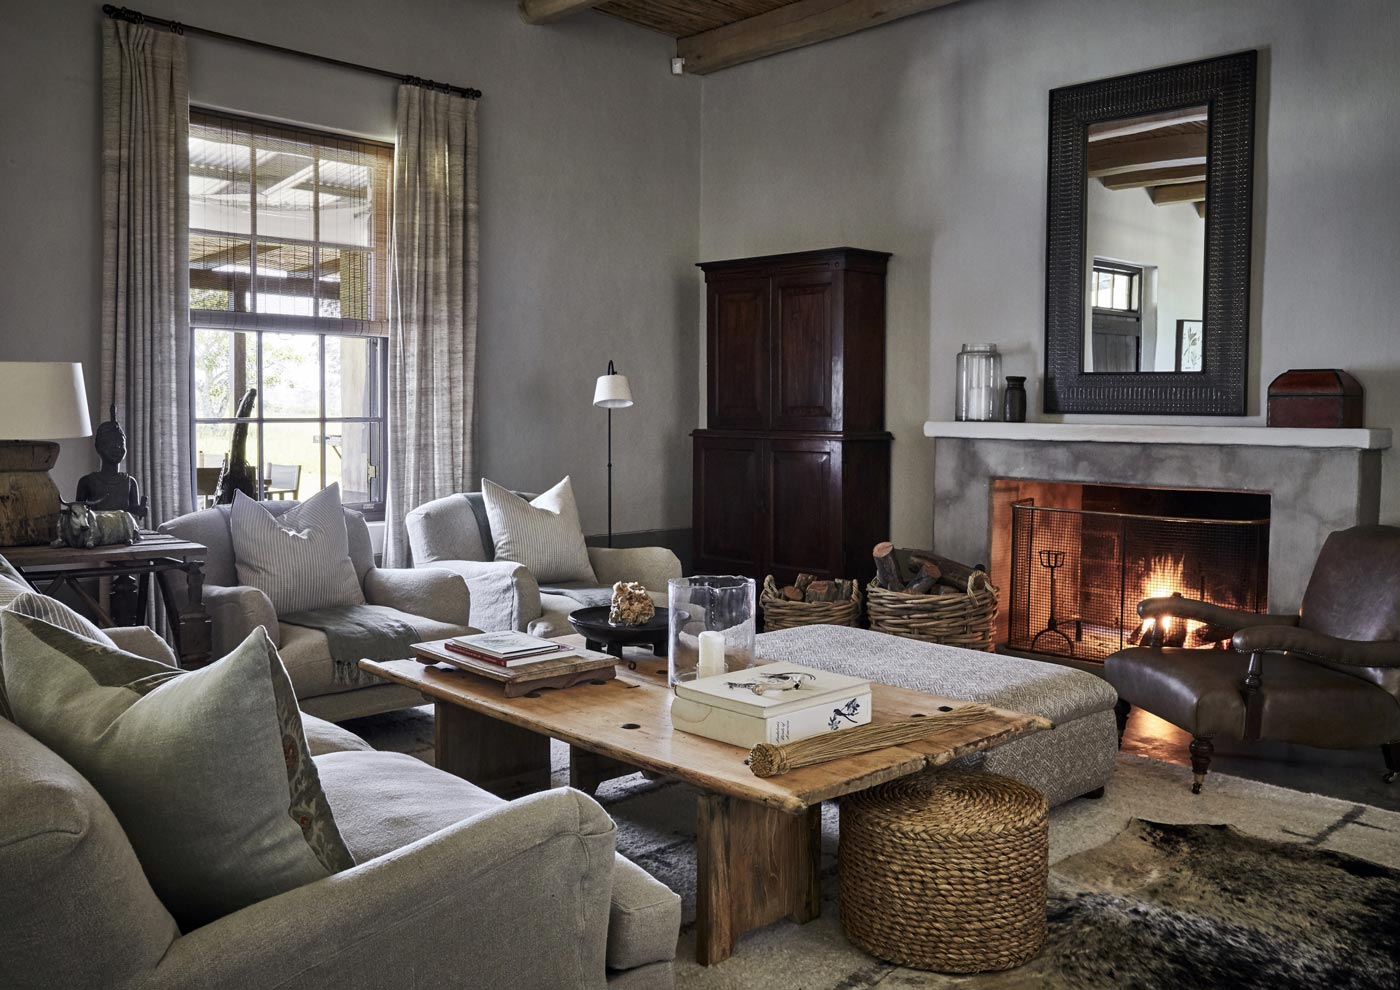 A Southafrican farmhouse by interior designer Gregory Mellor